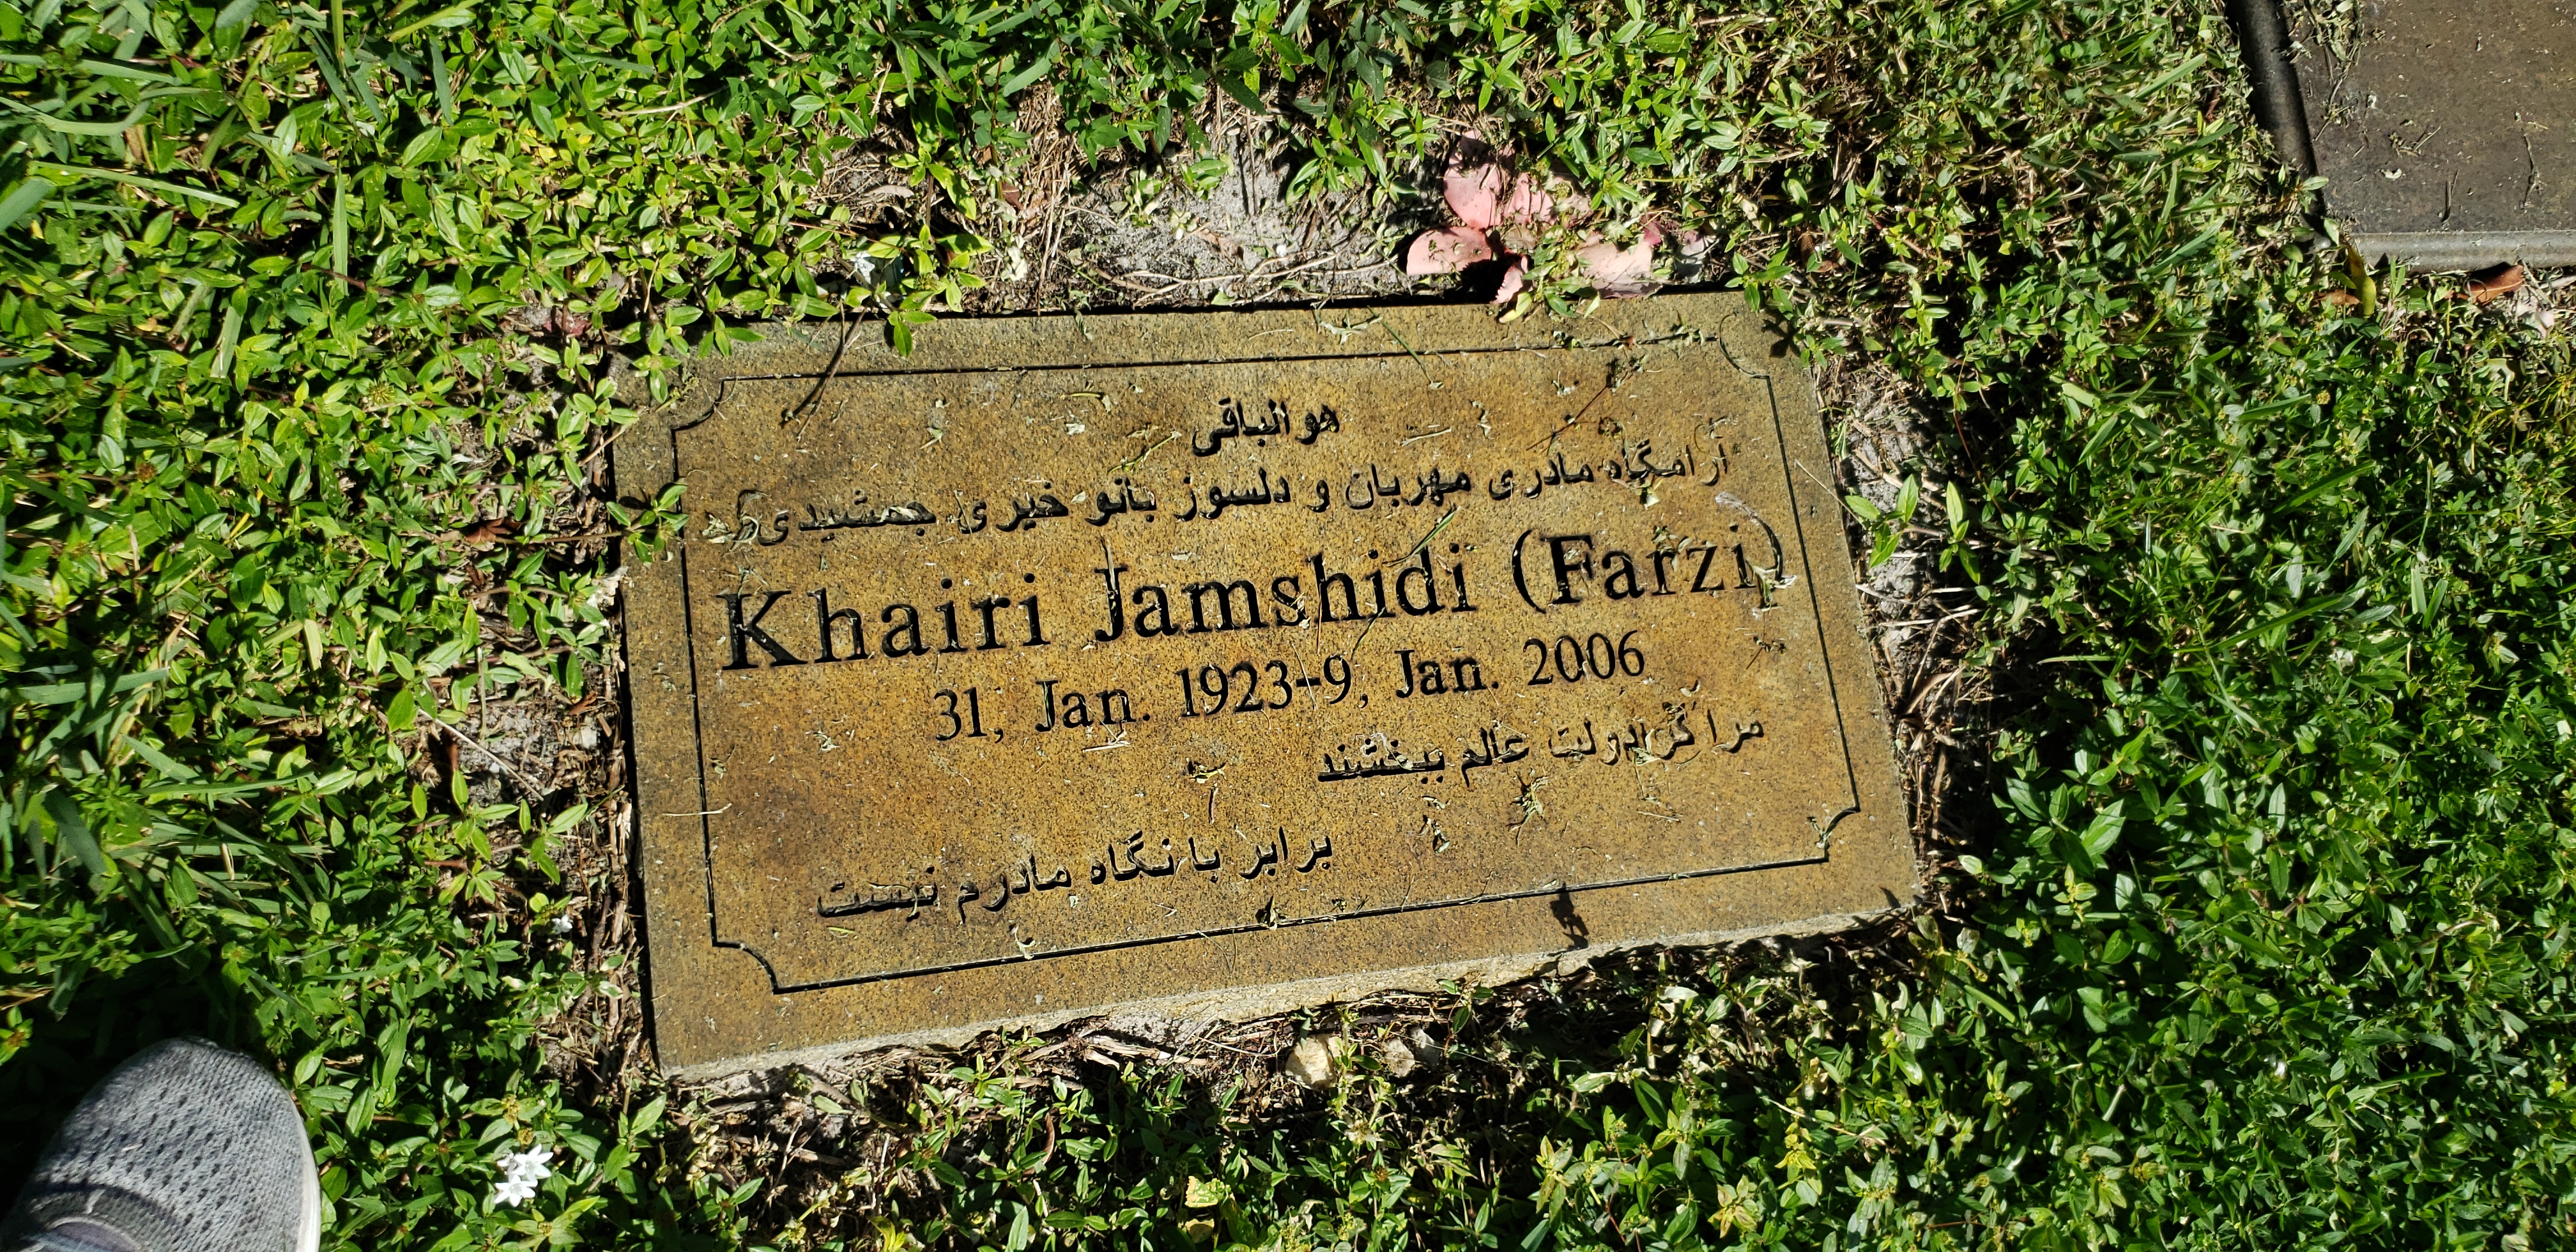 Khairi "Farzi" Jamshidi